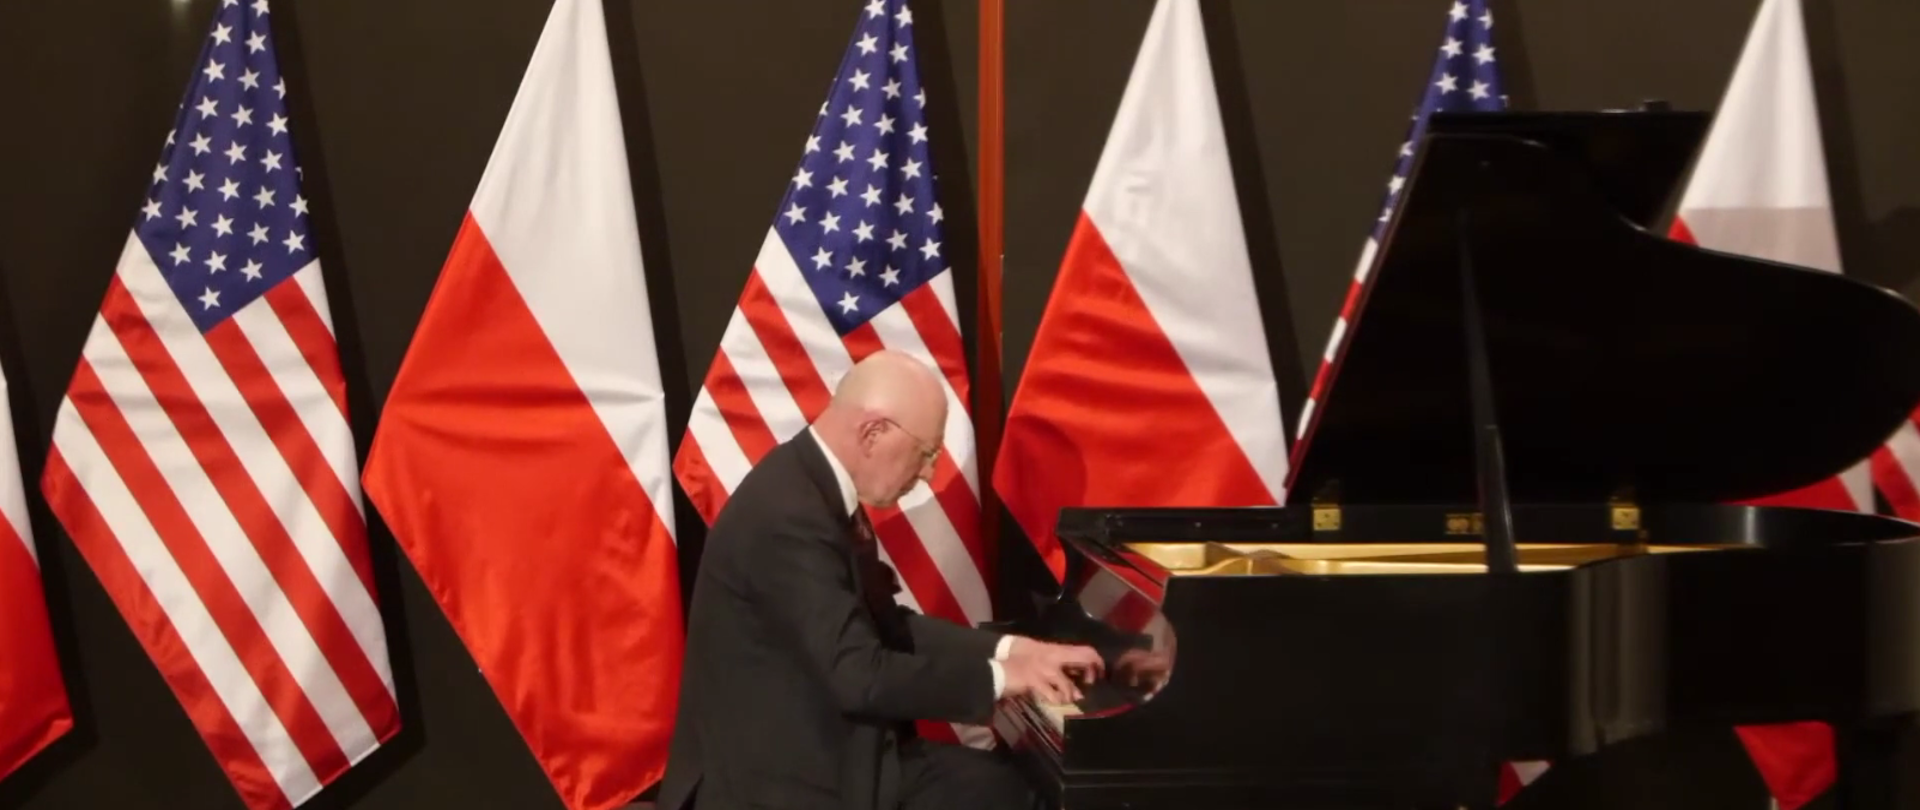 Marek Żebrowski gra na fortepianie utwór Ignacego Paderewskiego, Cracovienne Fantastique, Op. 14 NO. 6. Zdjęcie w tle przedstawia flagi polską i amerykańską. .